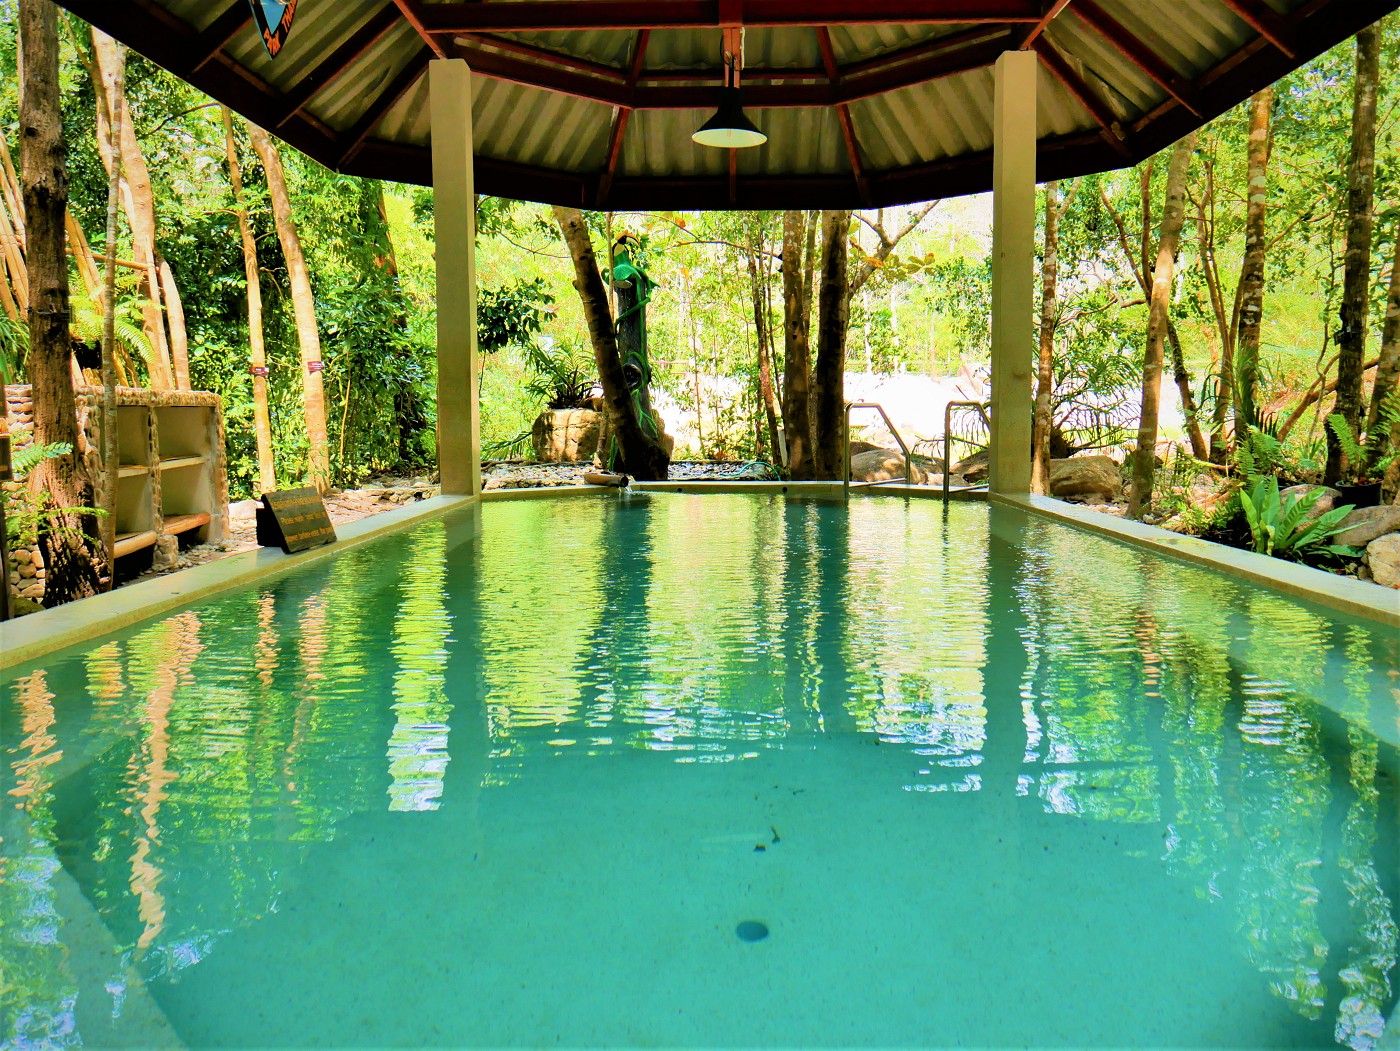 5 pornrang hot spring thermal waters ranong thailand south bath onsen soak